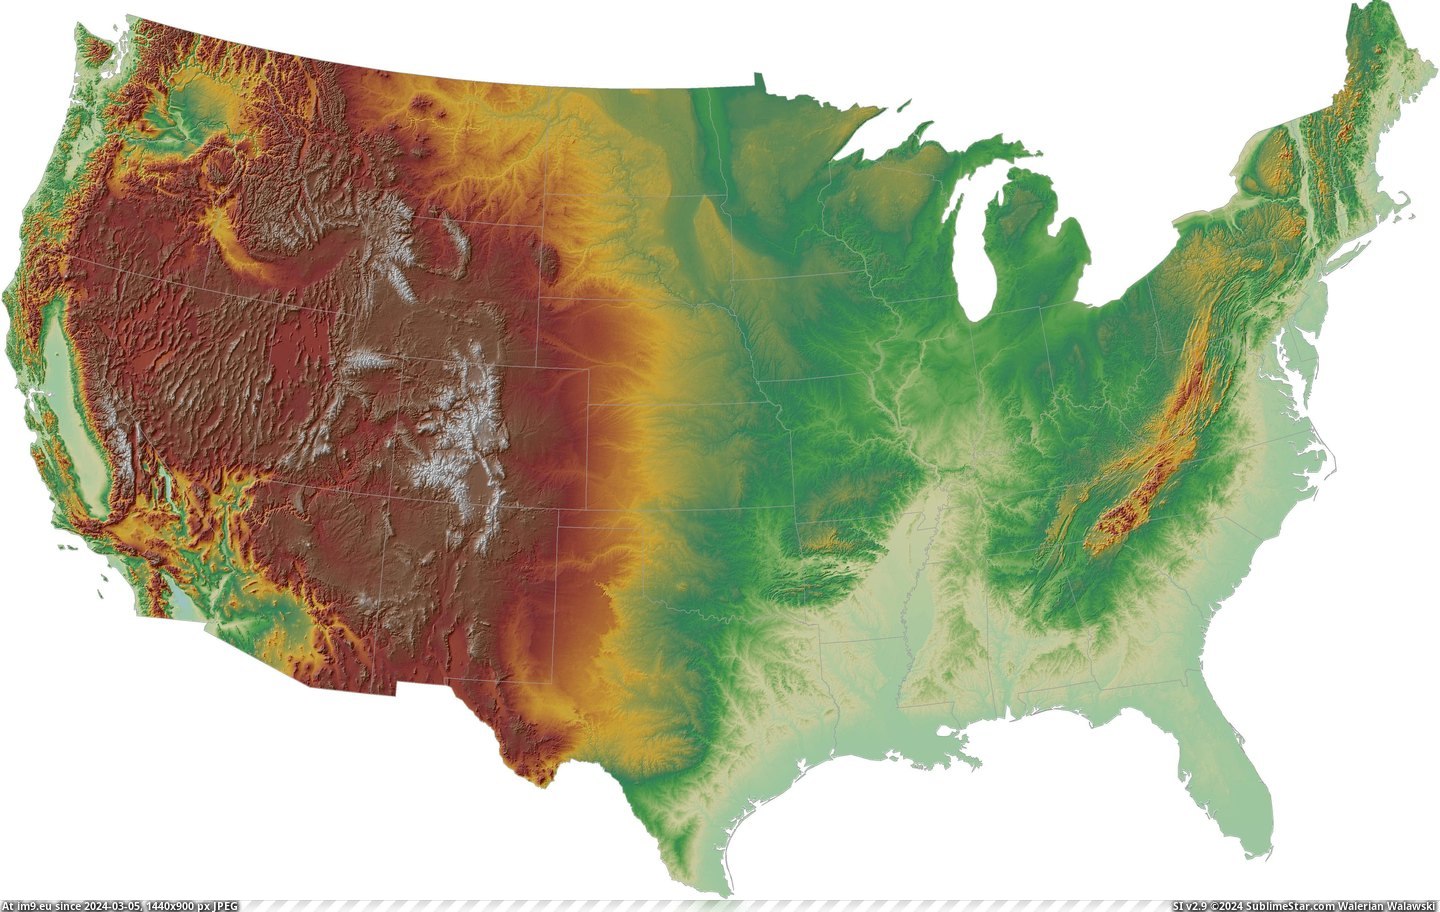 #Map #States #Topographic #United #Contiguous [Mapporn] Topographic hillshade map of the contiguous United States [5000x3136] Pic. (Bild von album My r/MAPS favs))